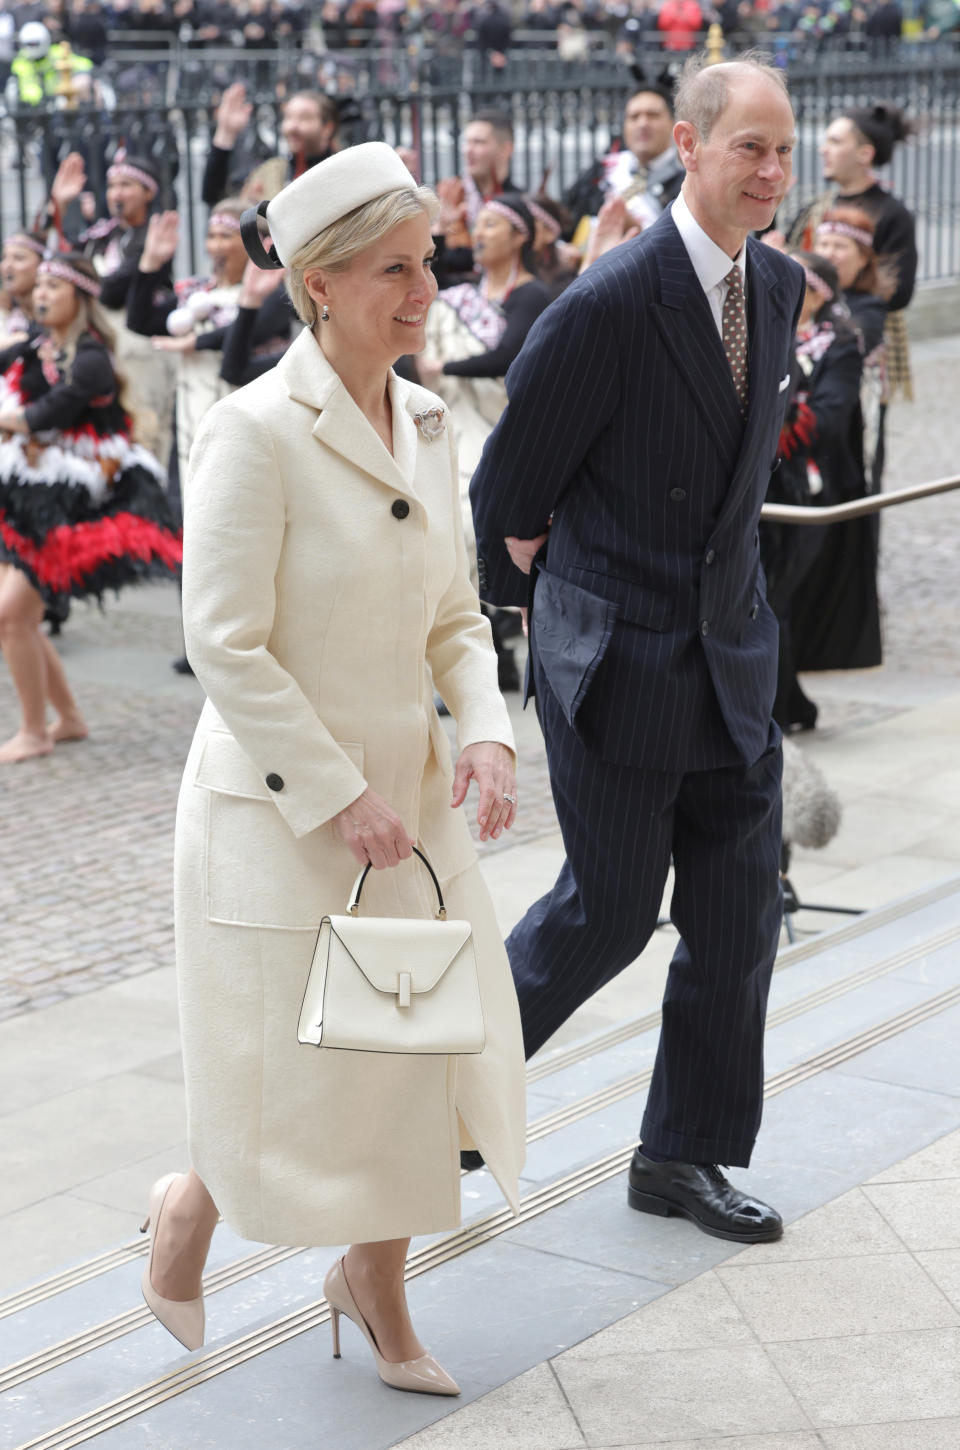 Sophie, duchesse d'Édimbourg et le prince Edward, duc d'Édimbourg assistent au service de la Journée du Commonwealth 2023 à l'abbaye de Westminster le 13 mars 2023 à Londres, en Angleterre.  Getty Images)